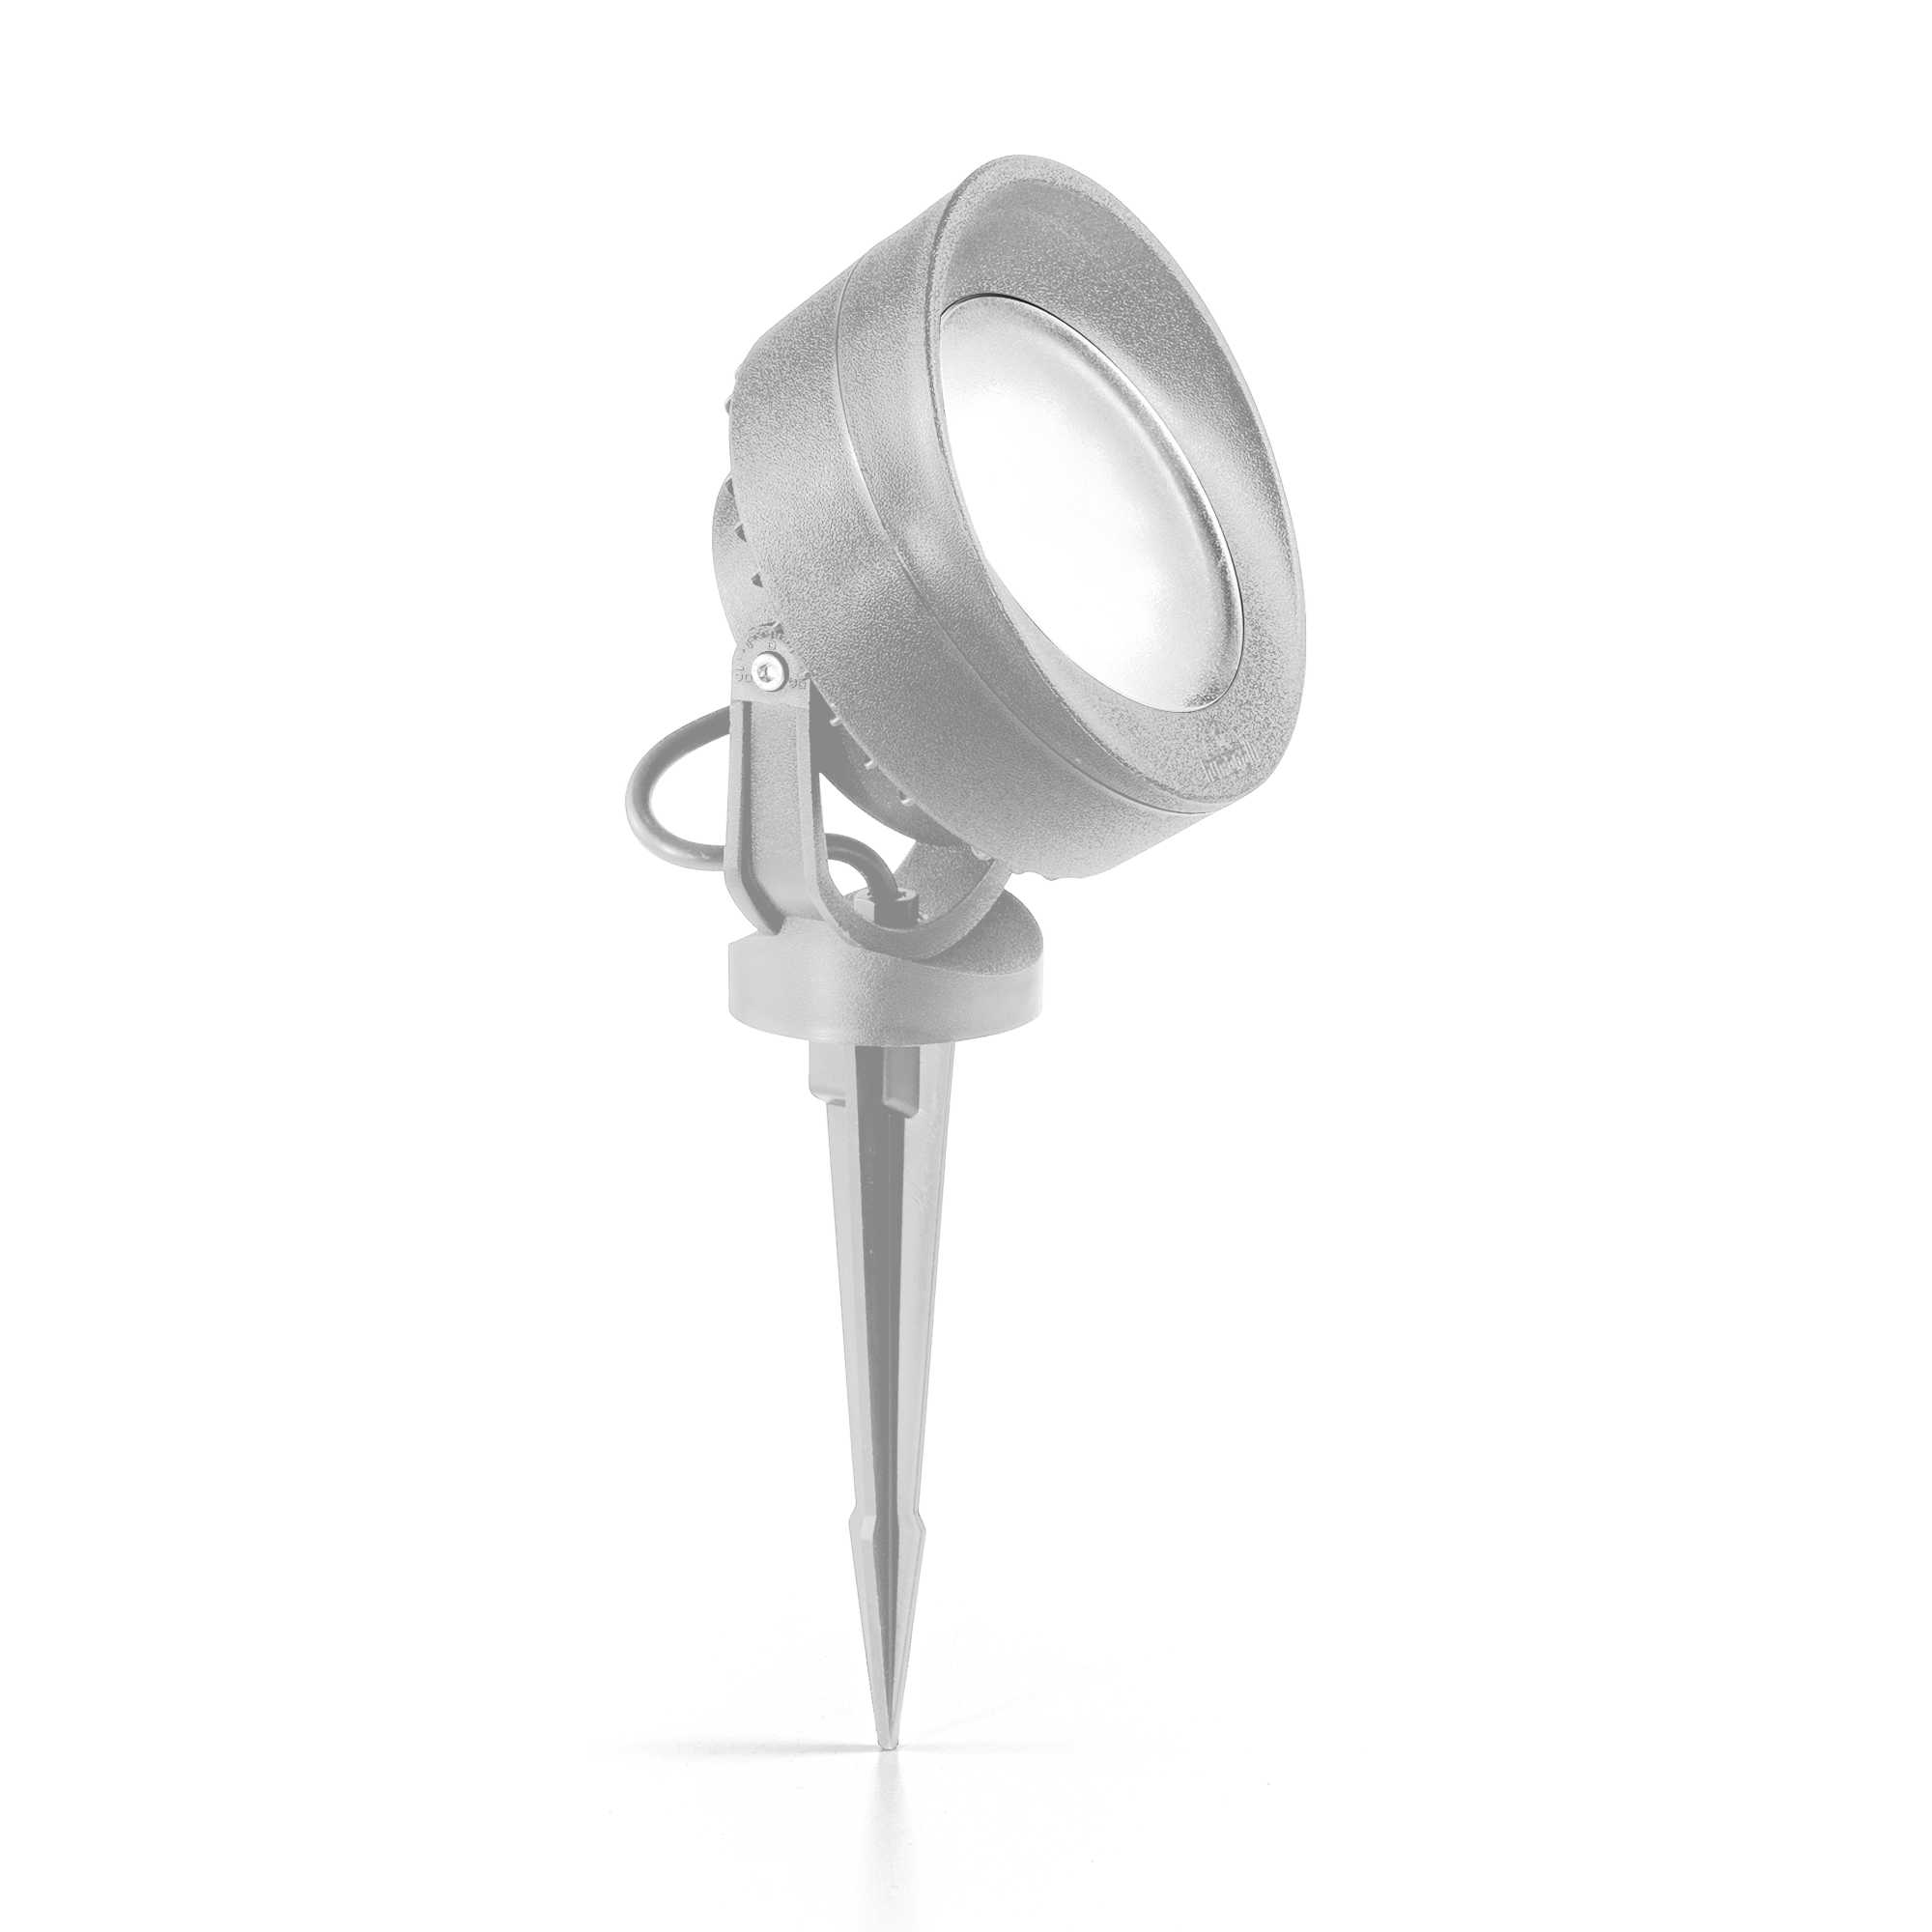 AD hotelska oprema Reflektori vanjski Litio pr1- Sive boje slika proizvoda